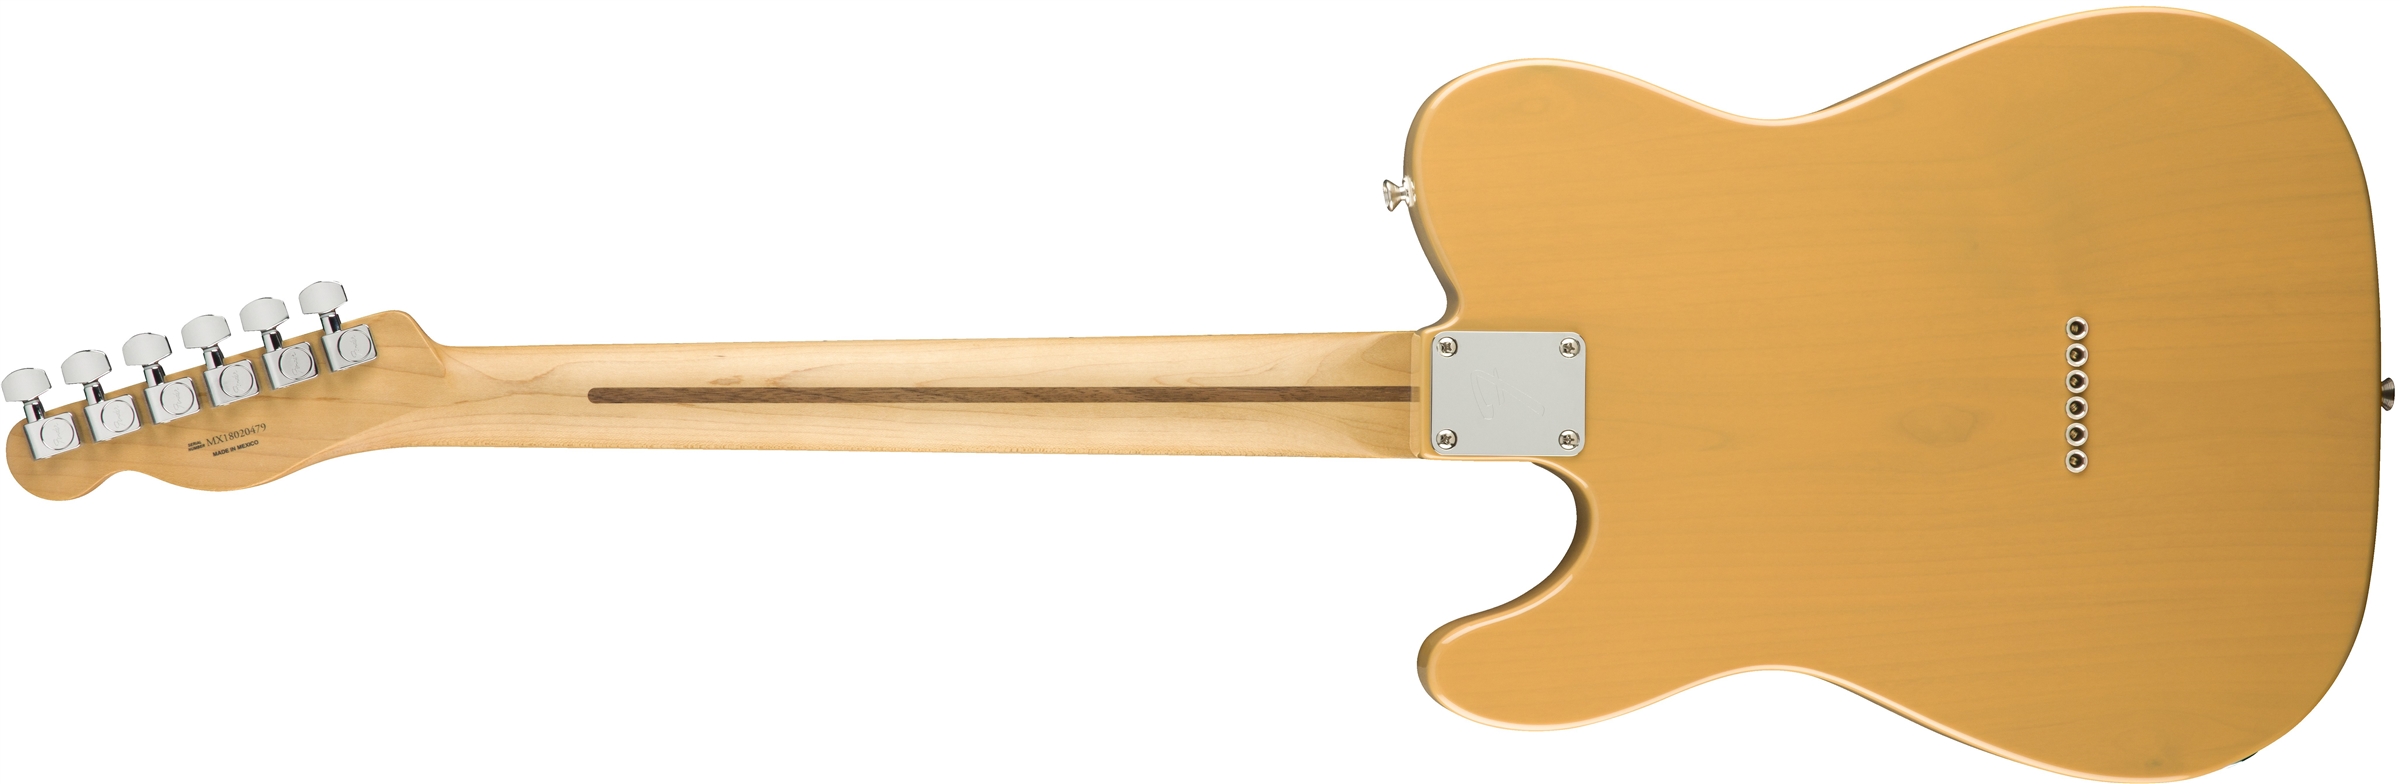 Fender Tele Player Mex Mn - Butterscotch Blonde - Televorm elektrische gitaar - Variation 2